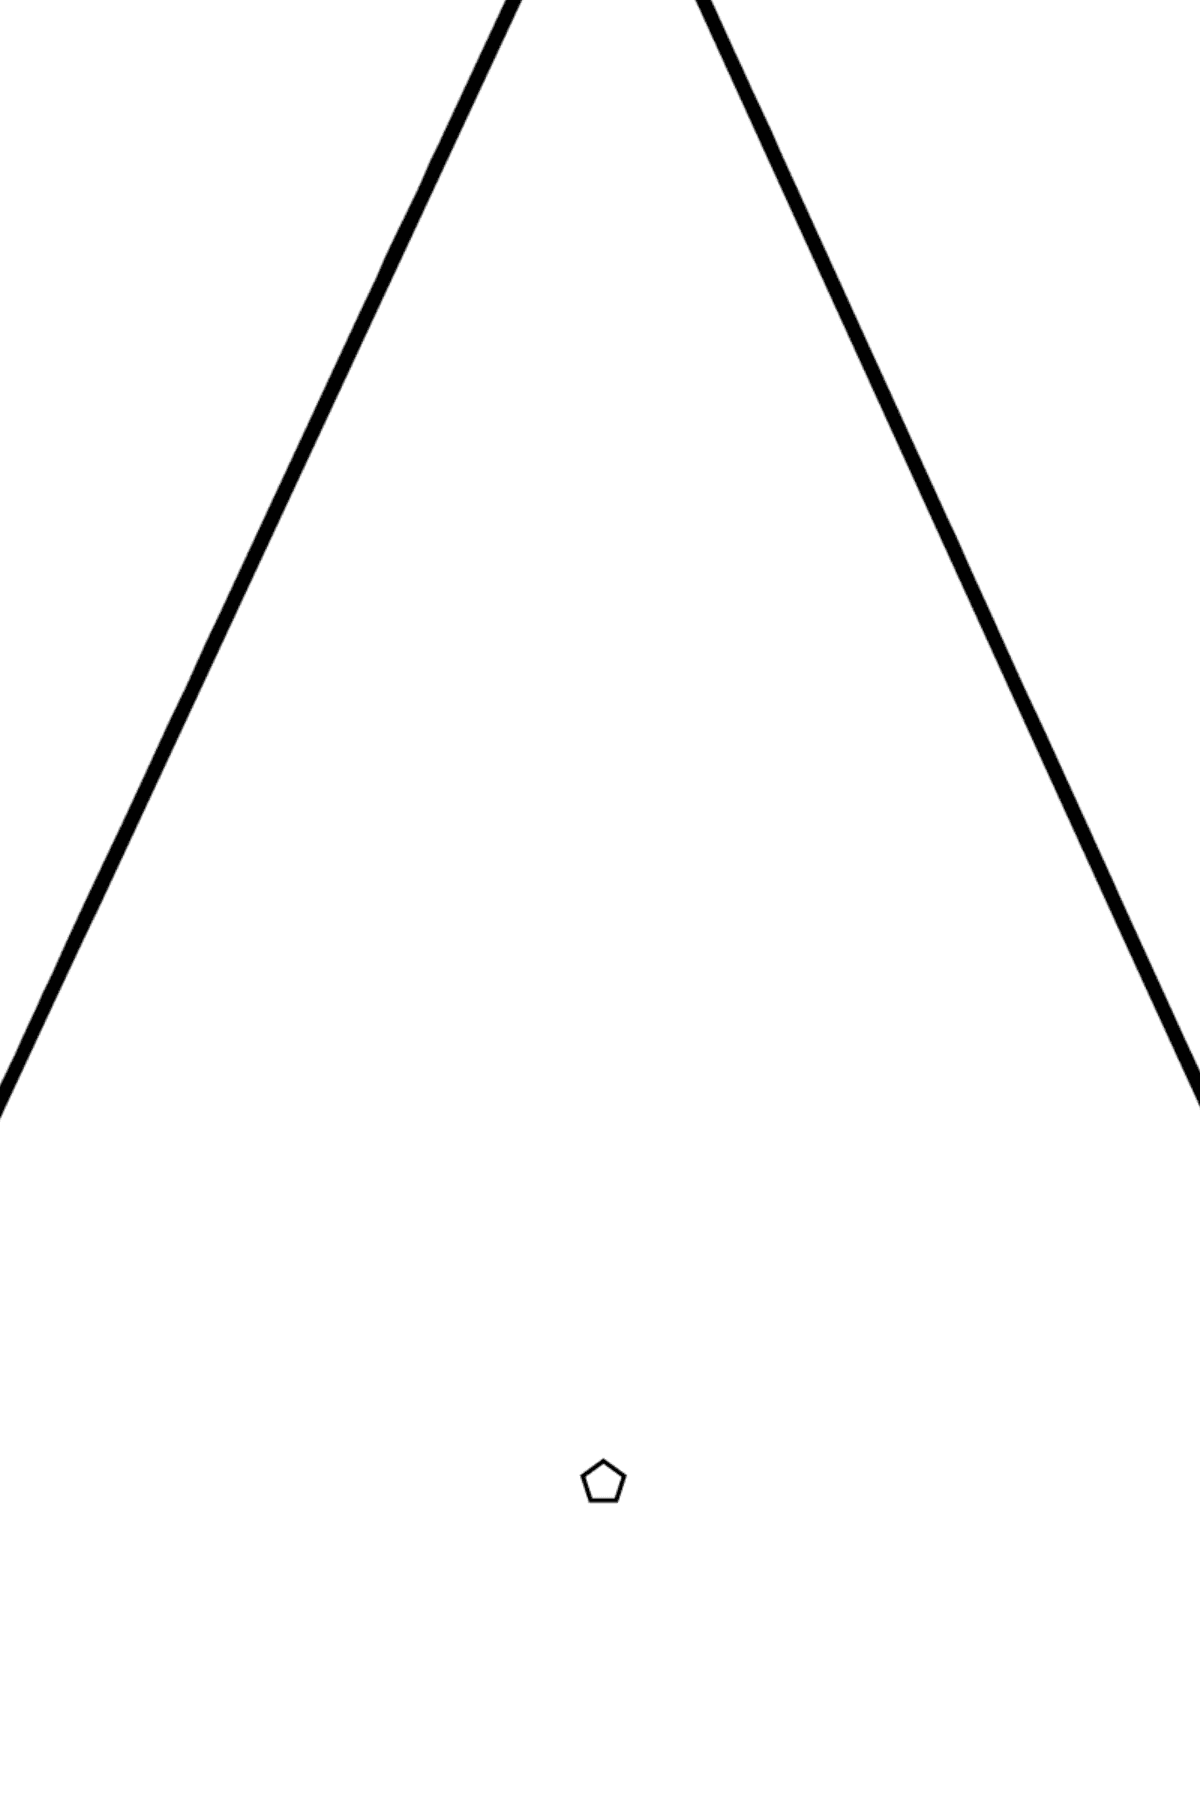 Раскраска треугольник - Картинка высокого качества для Детей